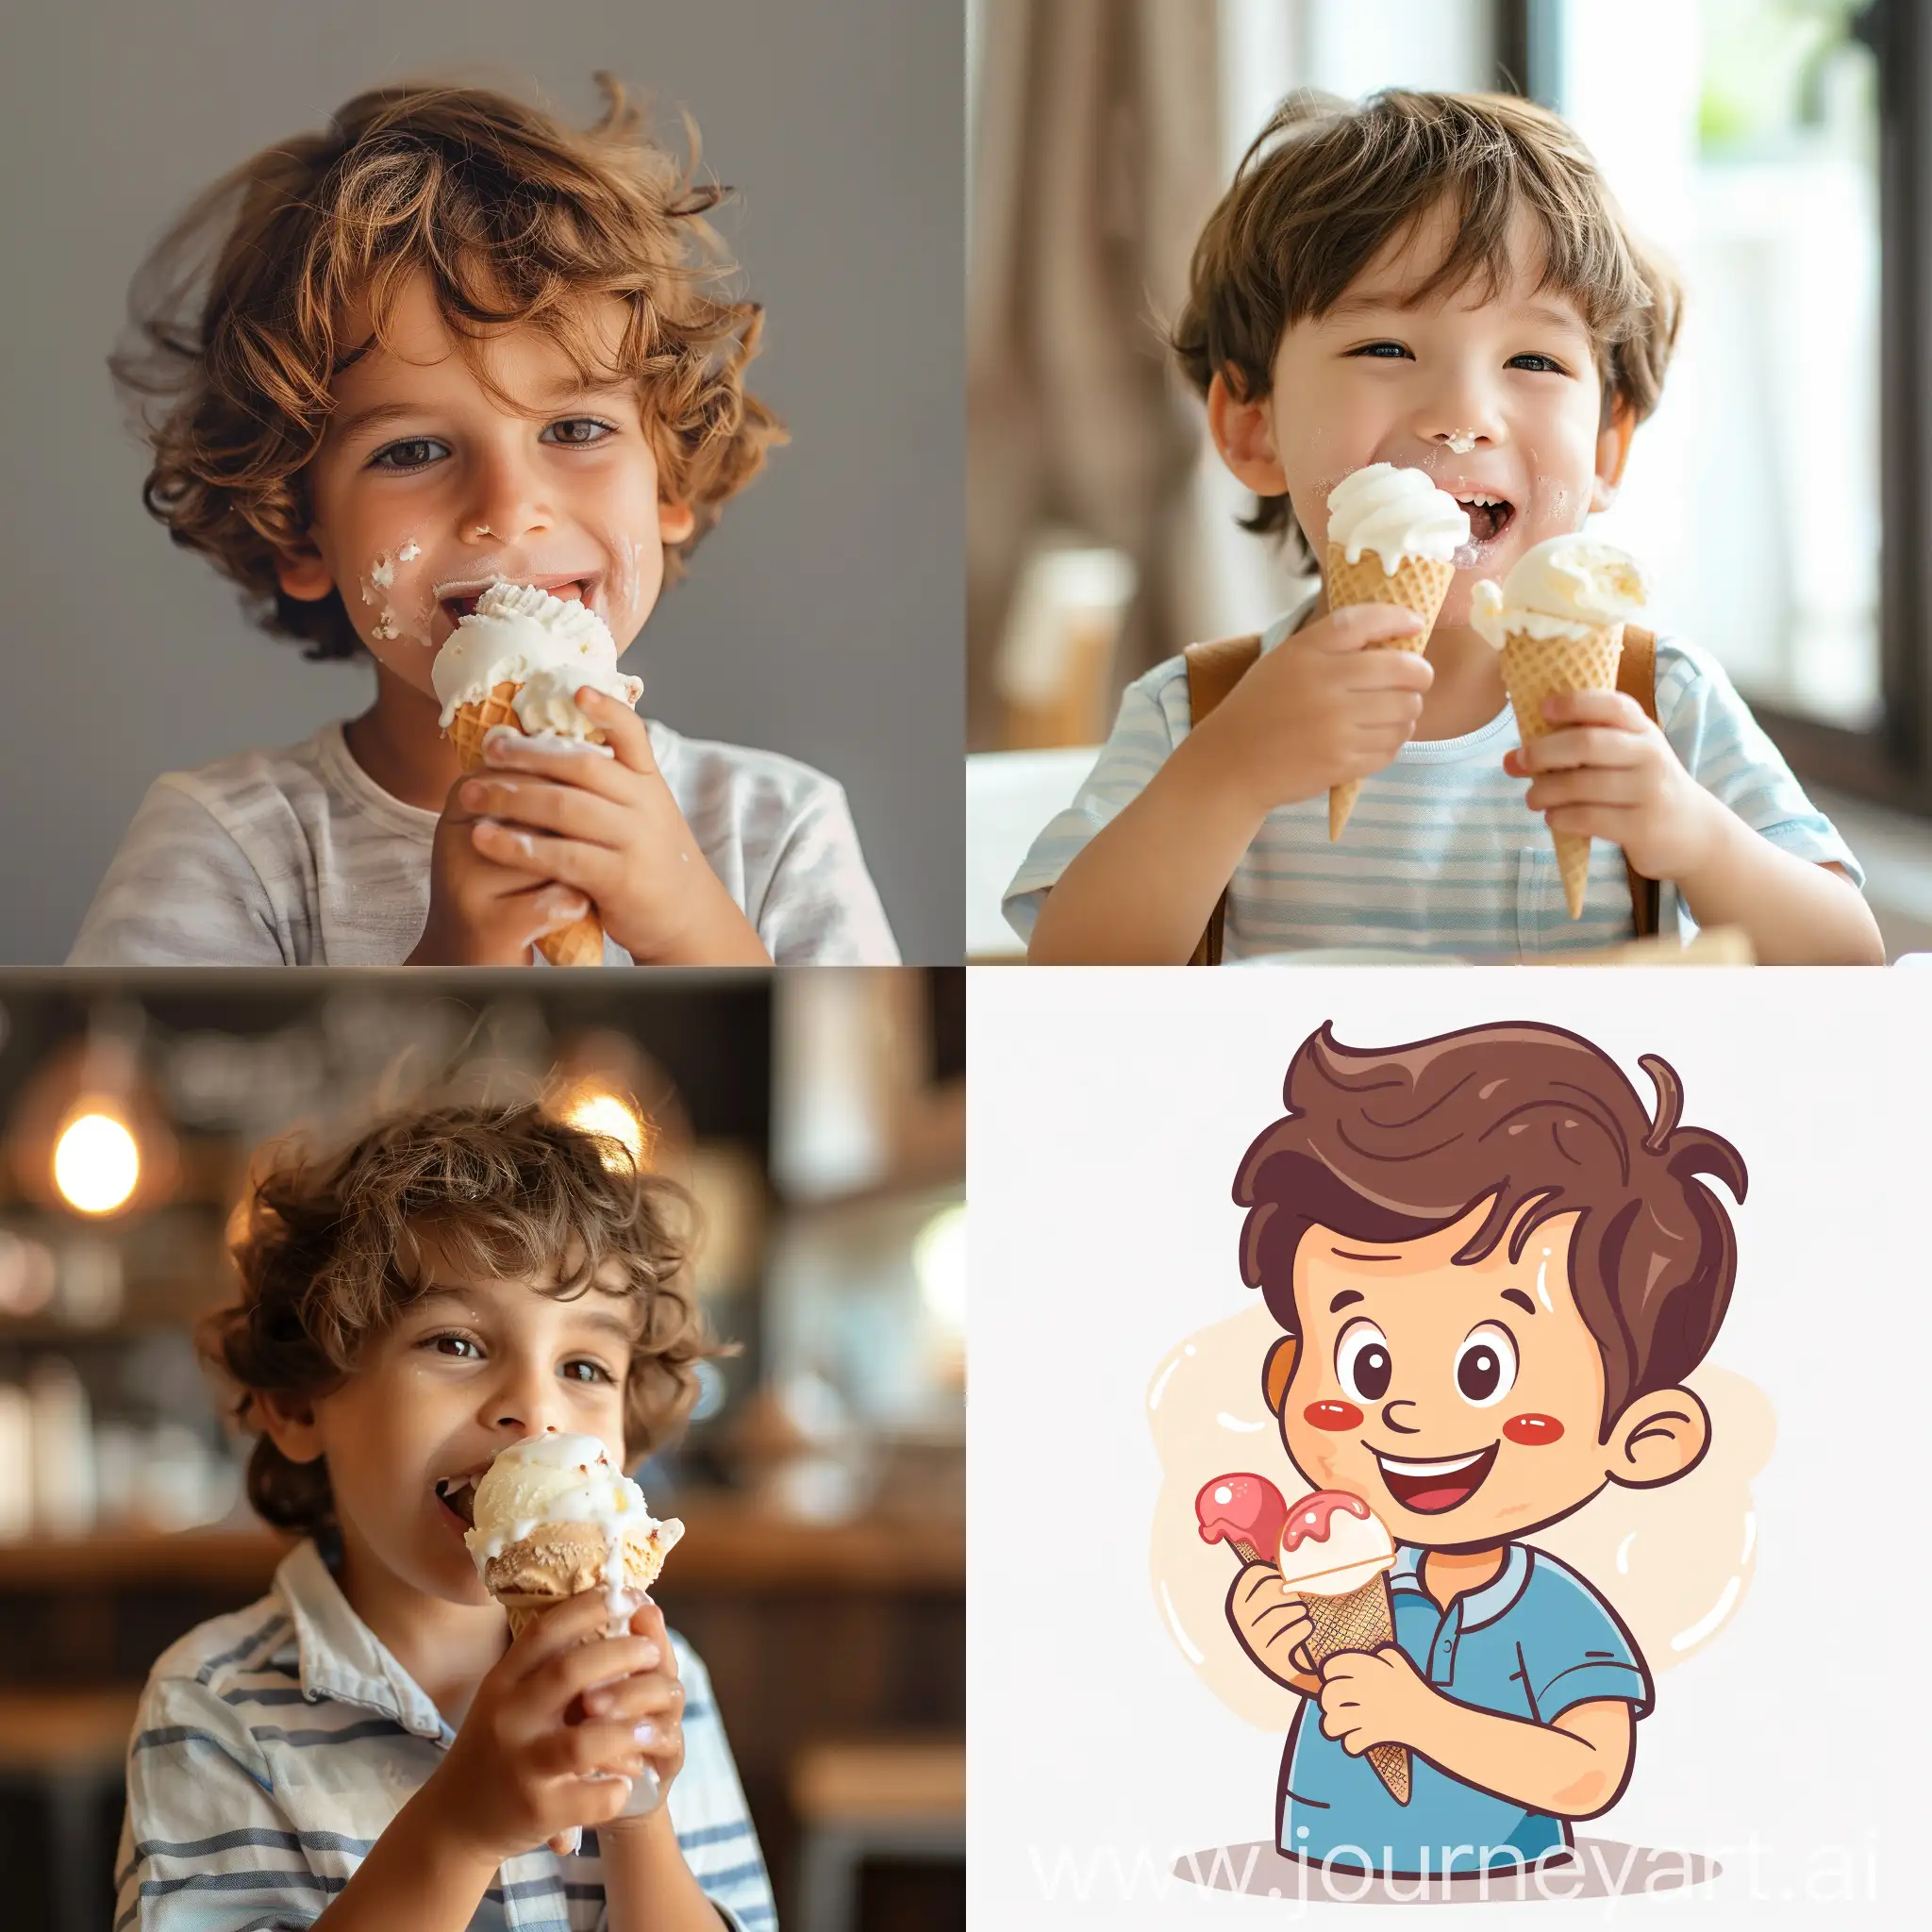 A cute boy eating icecream